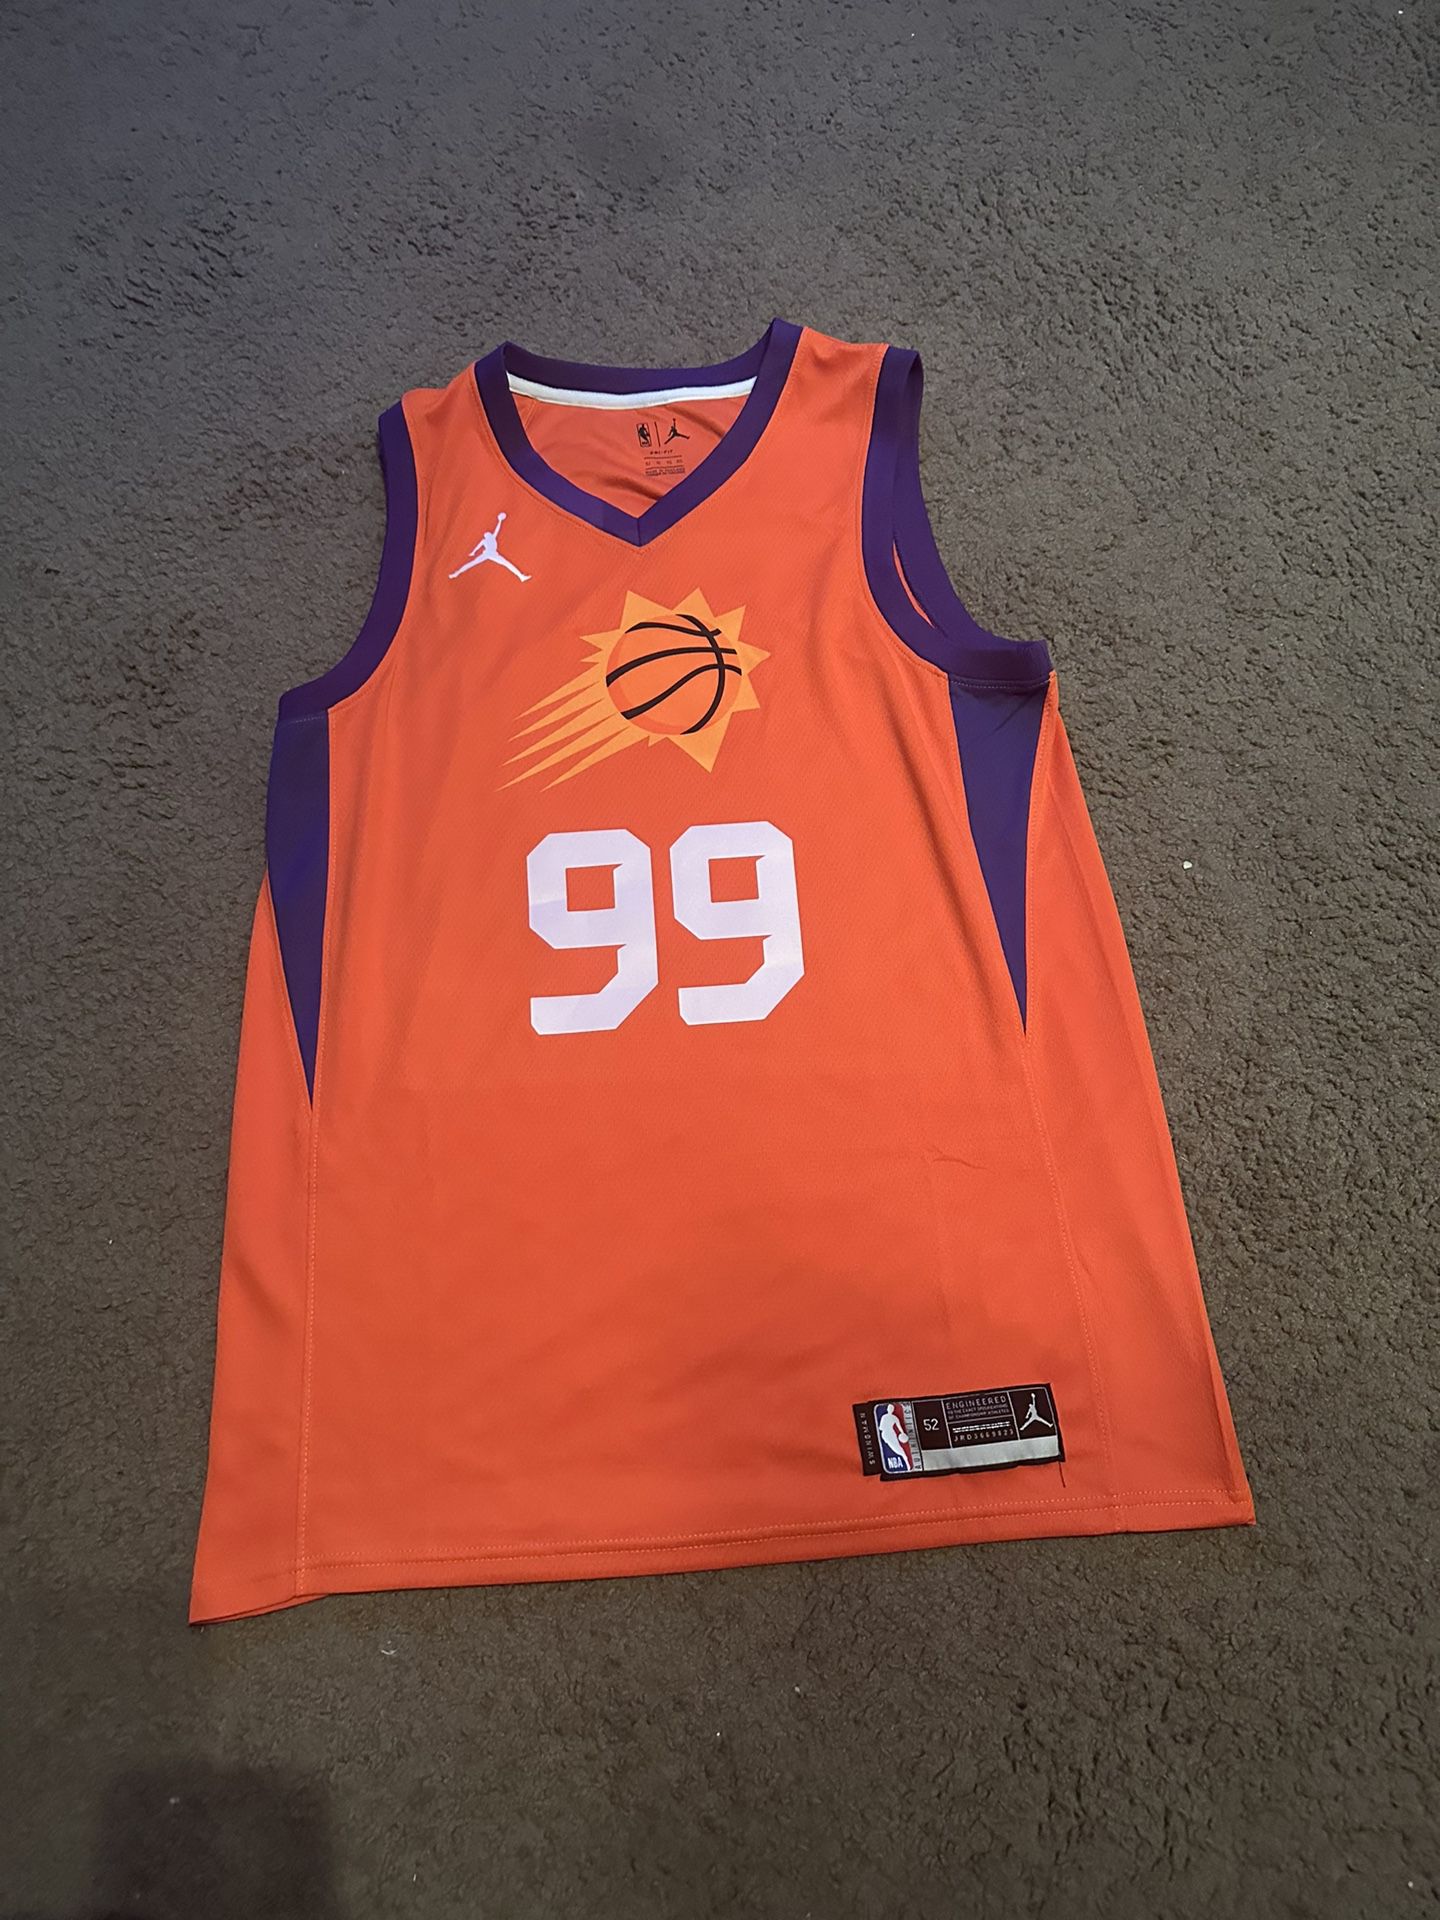 Phoenix Suns Jersey for Sale in Phoenix, AZ - OfferUp